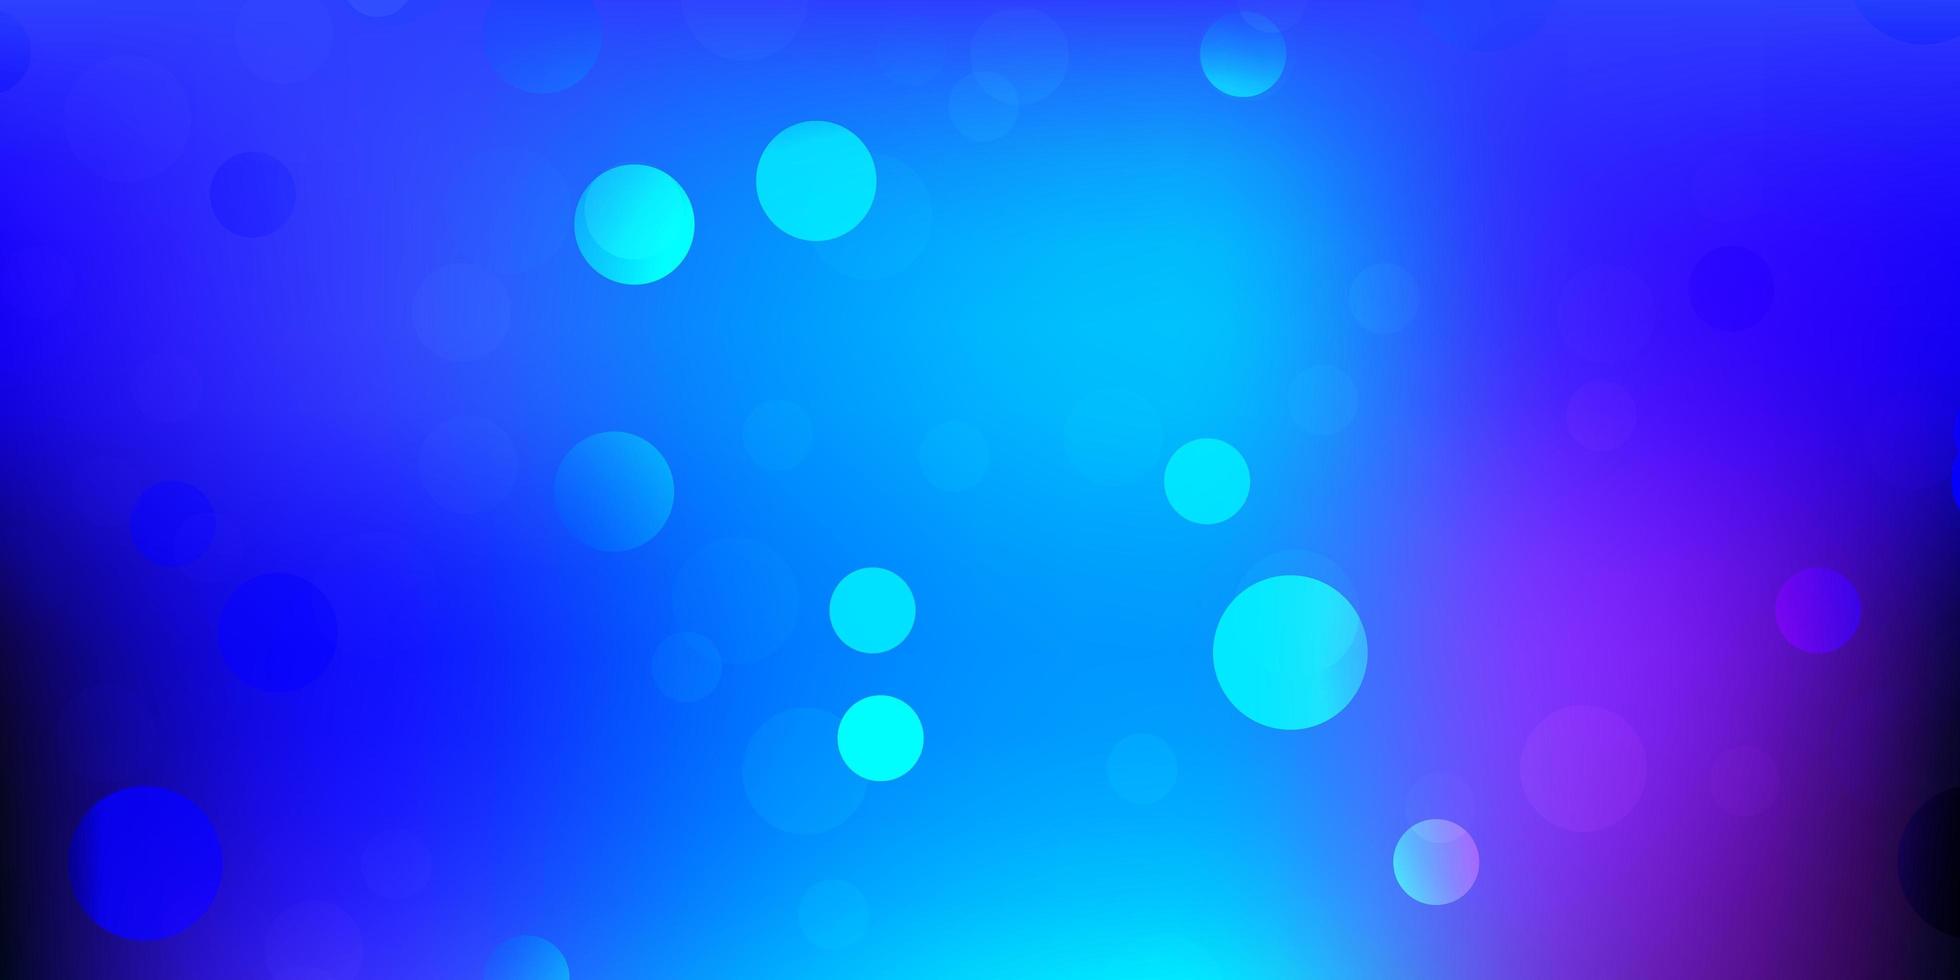 motif vectoriel bleu rose foncé avec des formes abstraites